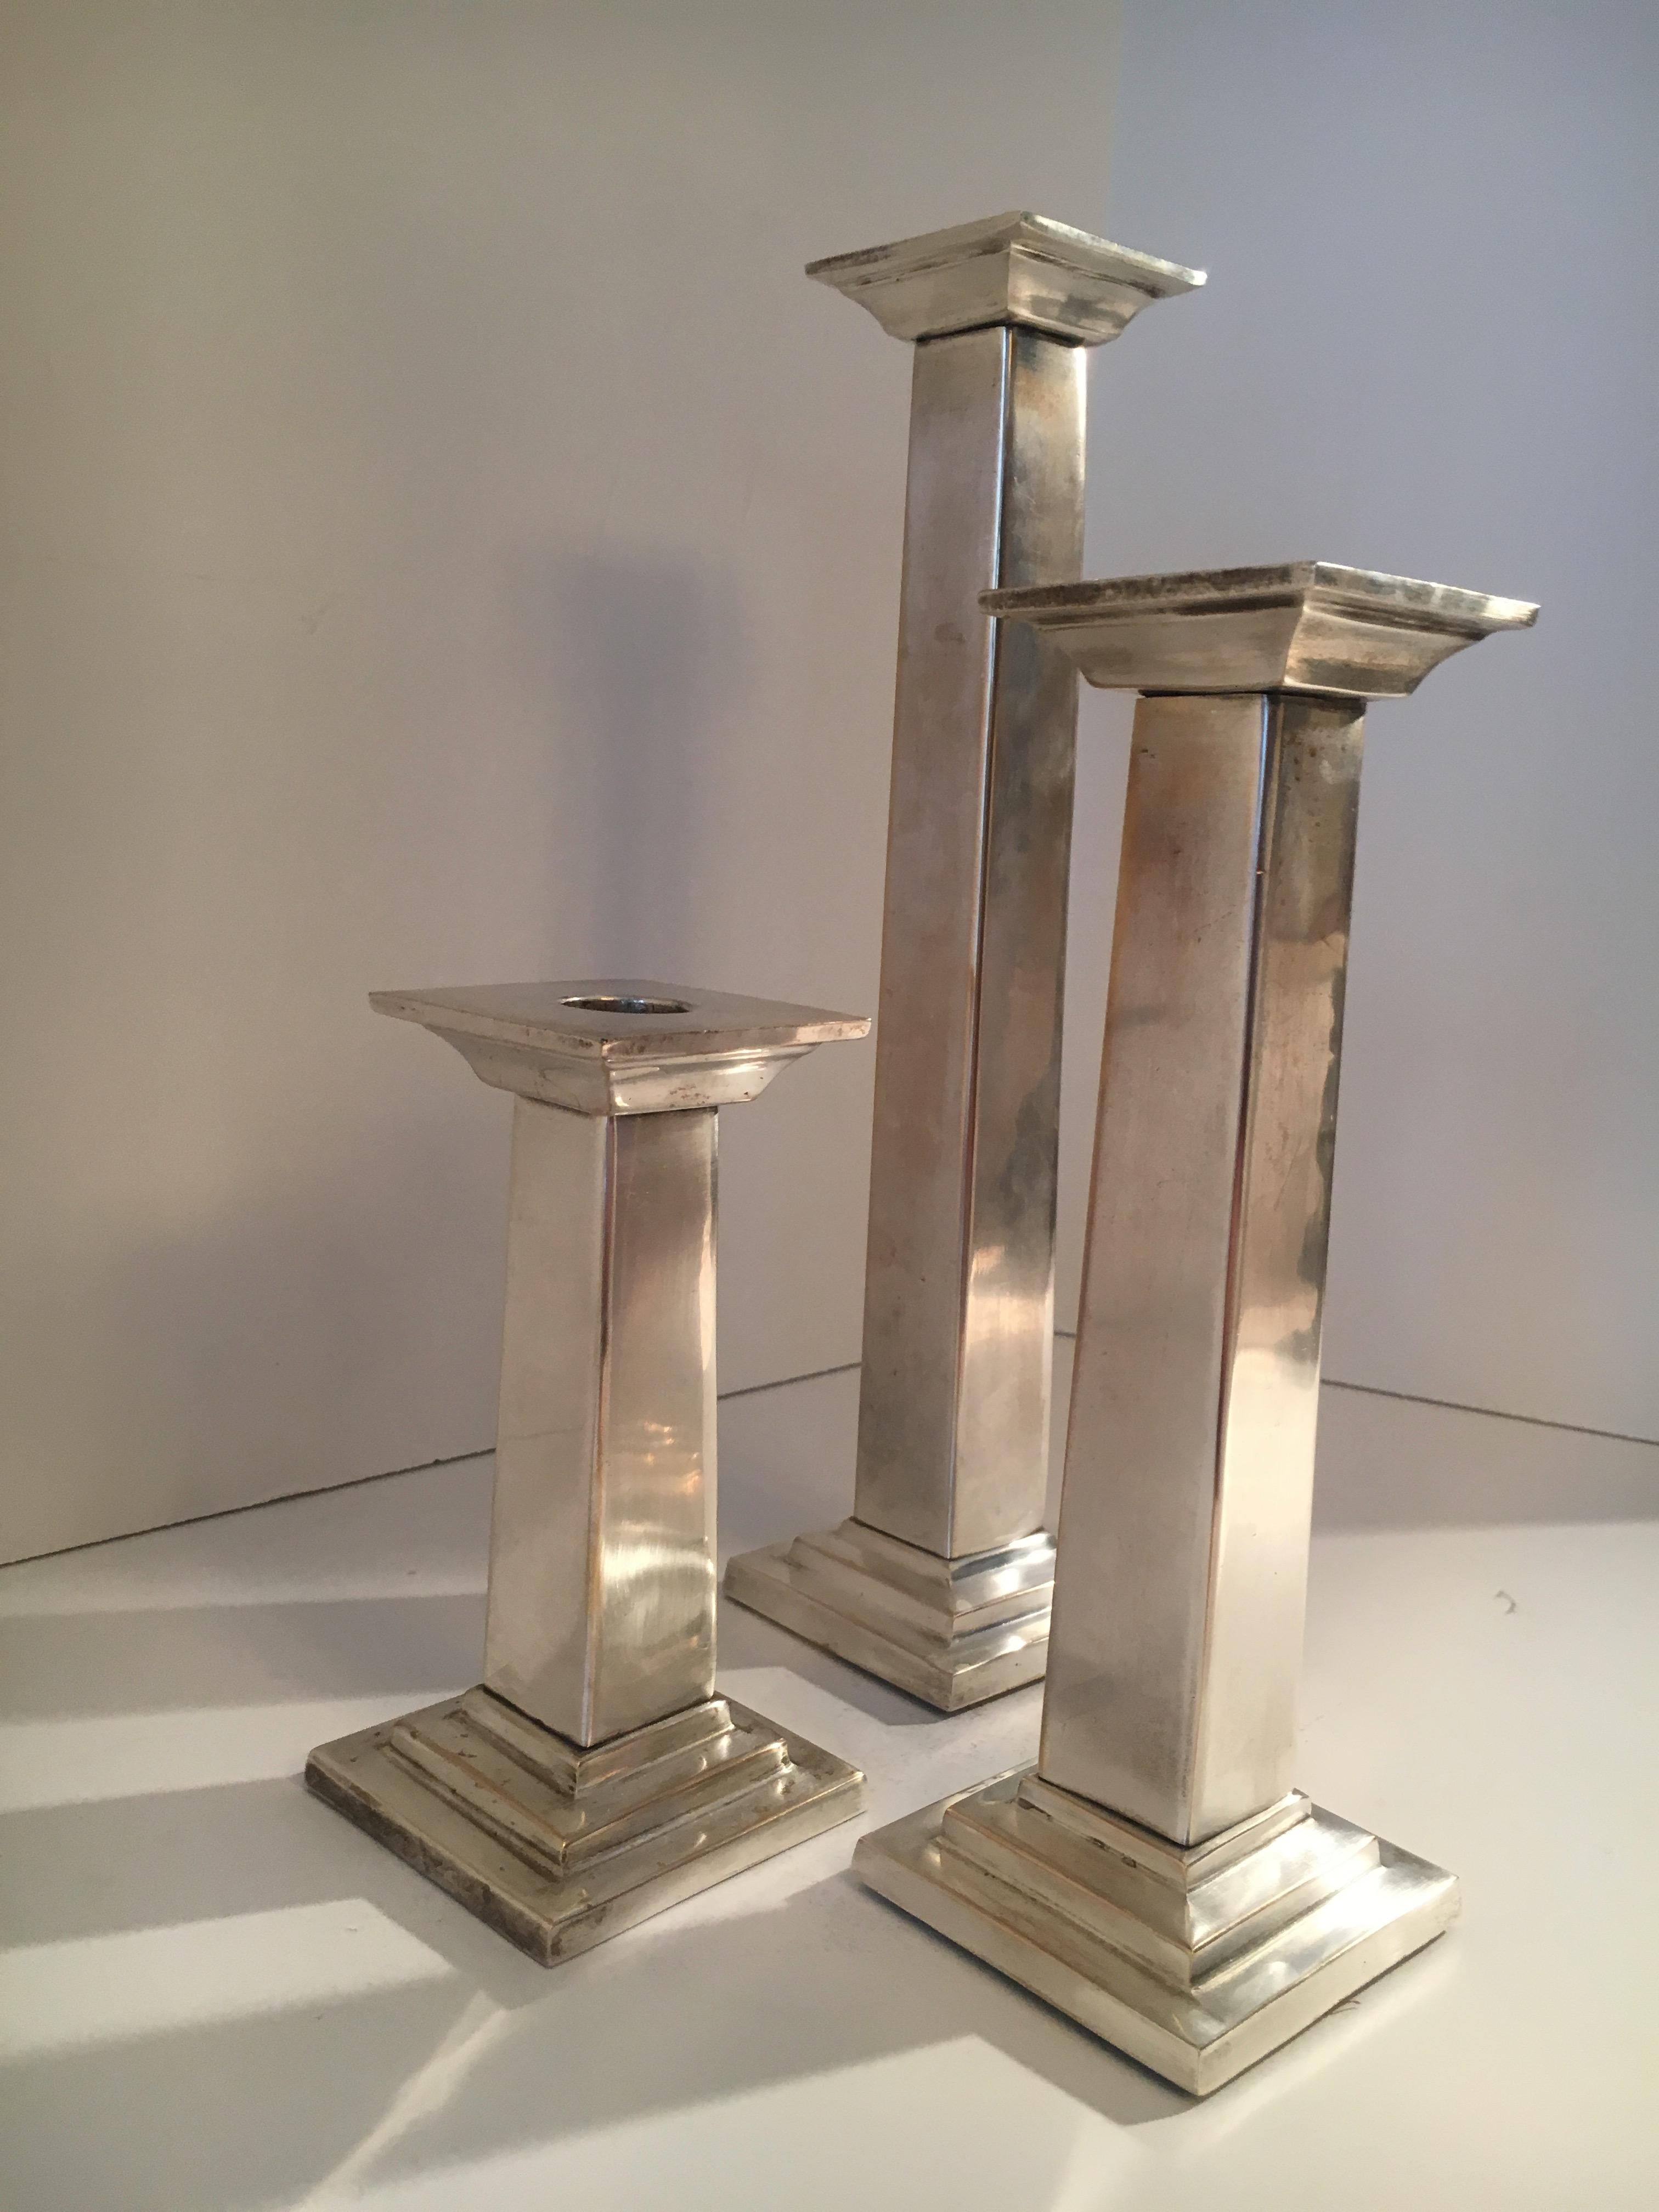 Ensemble de trois chandeliers en métal argenté - un beau trio prêt pour votre prochain dîner ou soirée !

3 tailles toutes 3